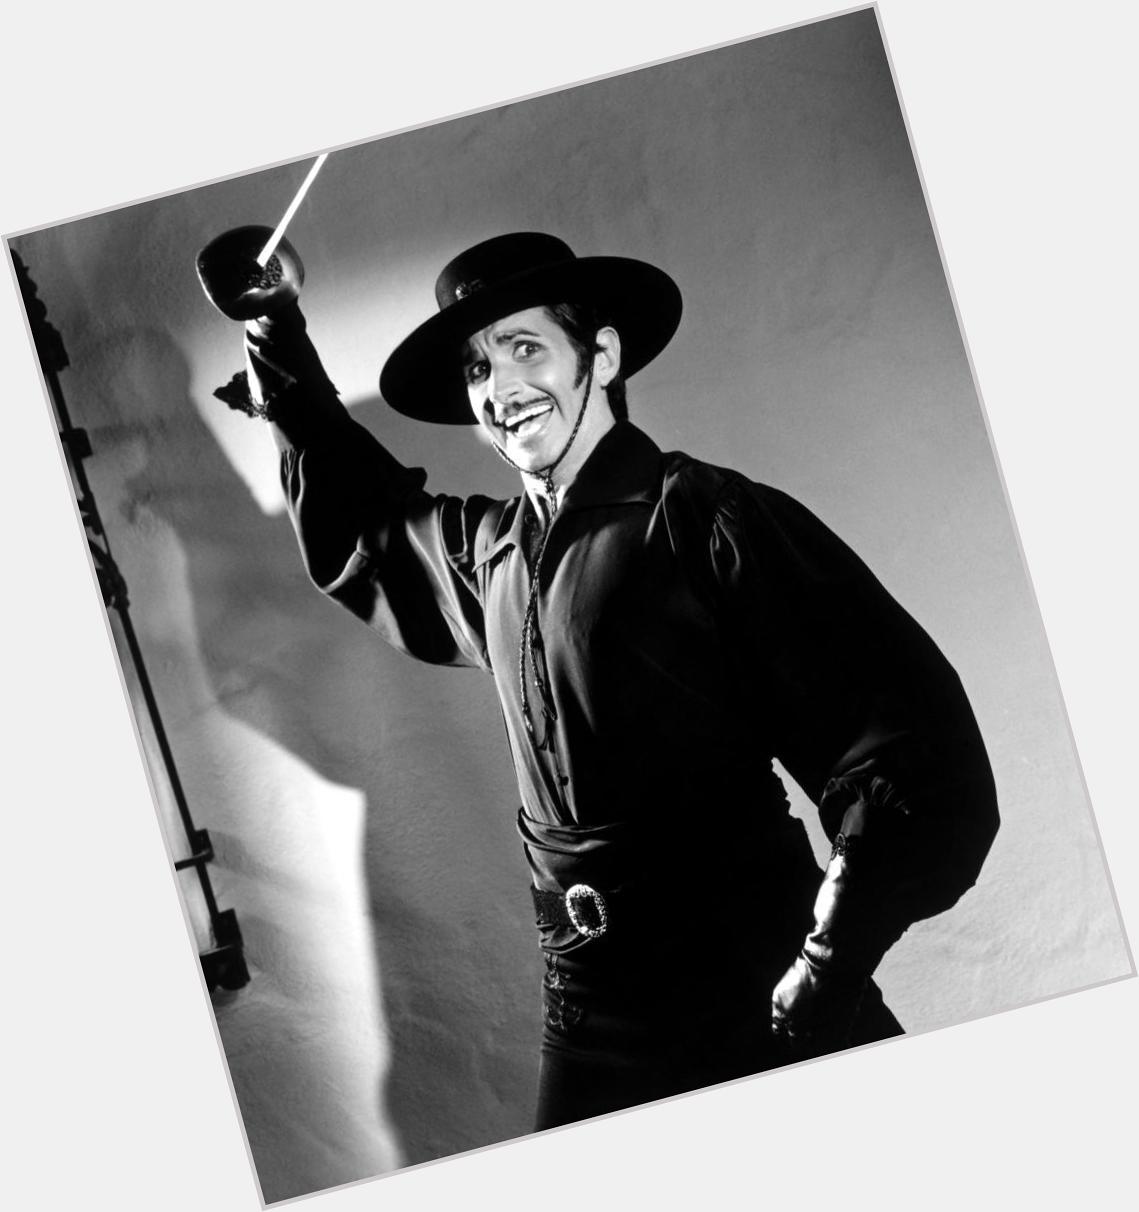 Hoy hay muchos cumpleaños, pero me quedo con el de George Hamilton...
Happy Birthday, Zorro! 